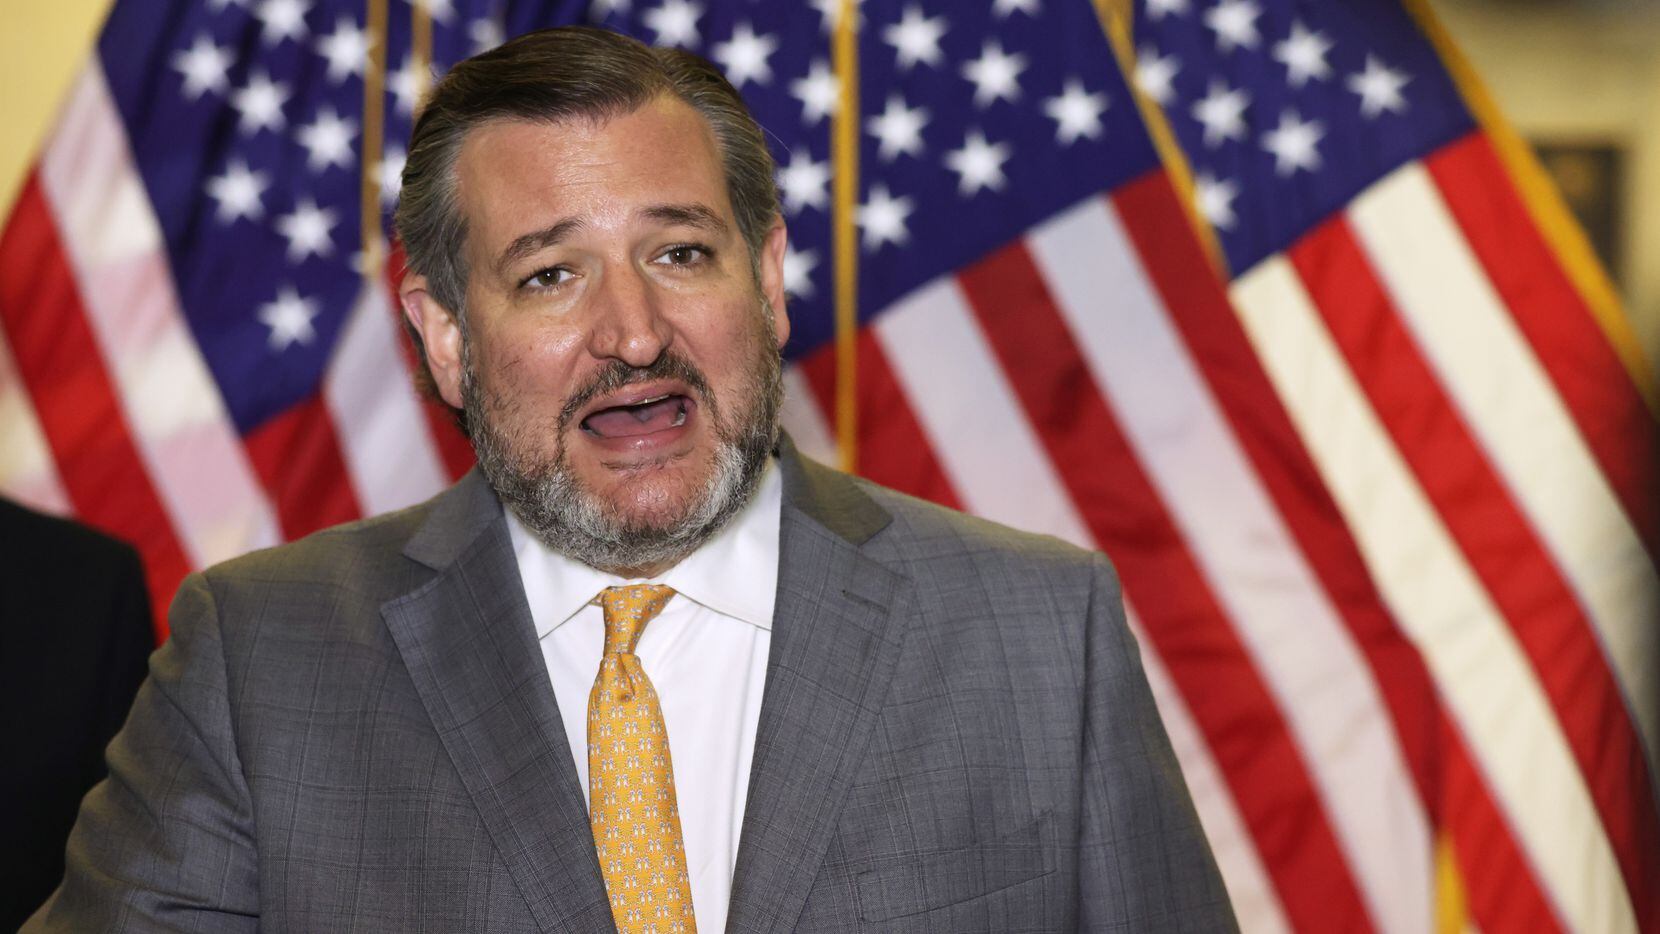 El senador Ted Cruz fue acusado de sedición los días después de la insurrección del Capitolio.